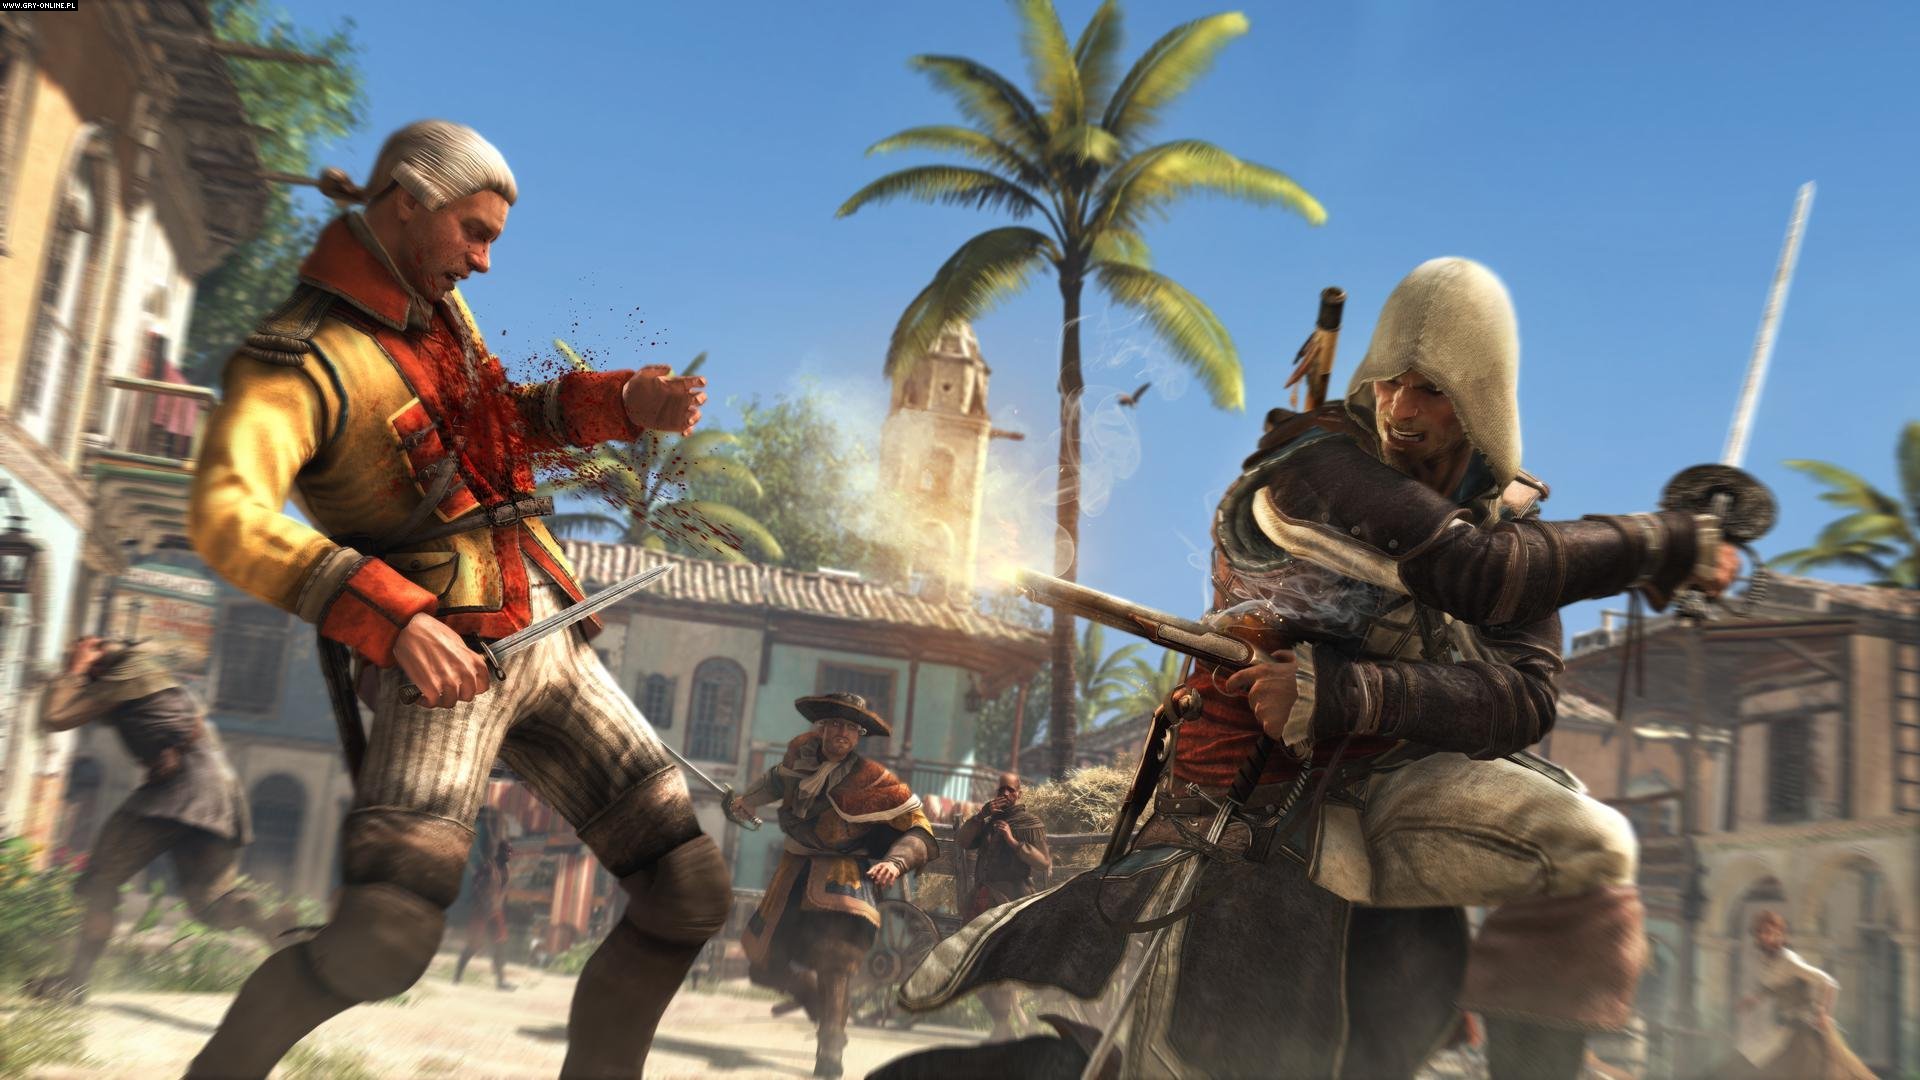 Descarga gratis la imagen Videojuego, Assassin's Creed, Assassin's Creed Iv: Black Flag en el escritorio de tu PC